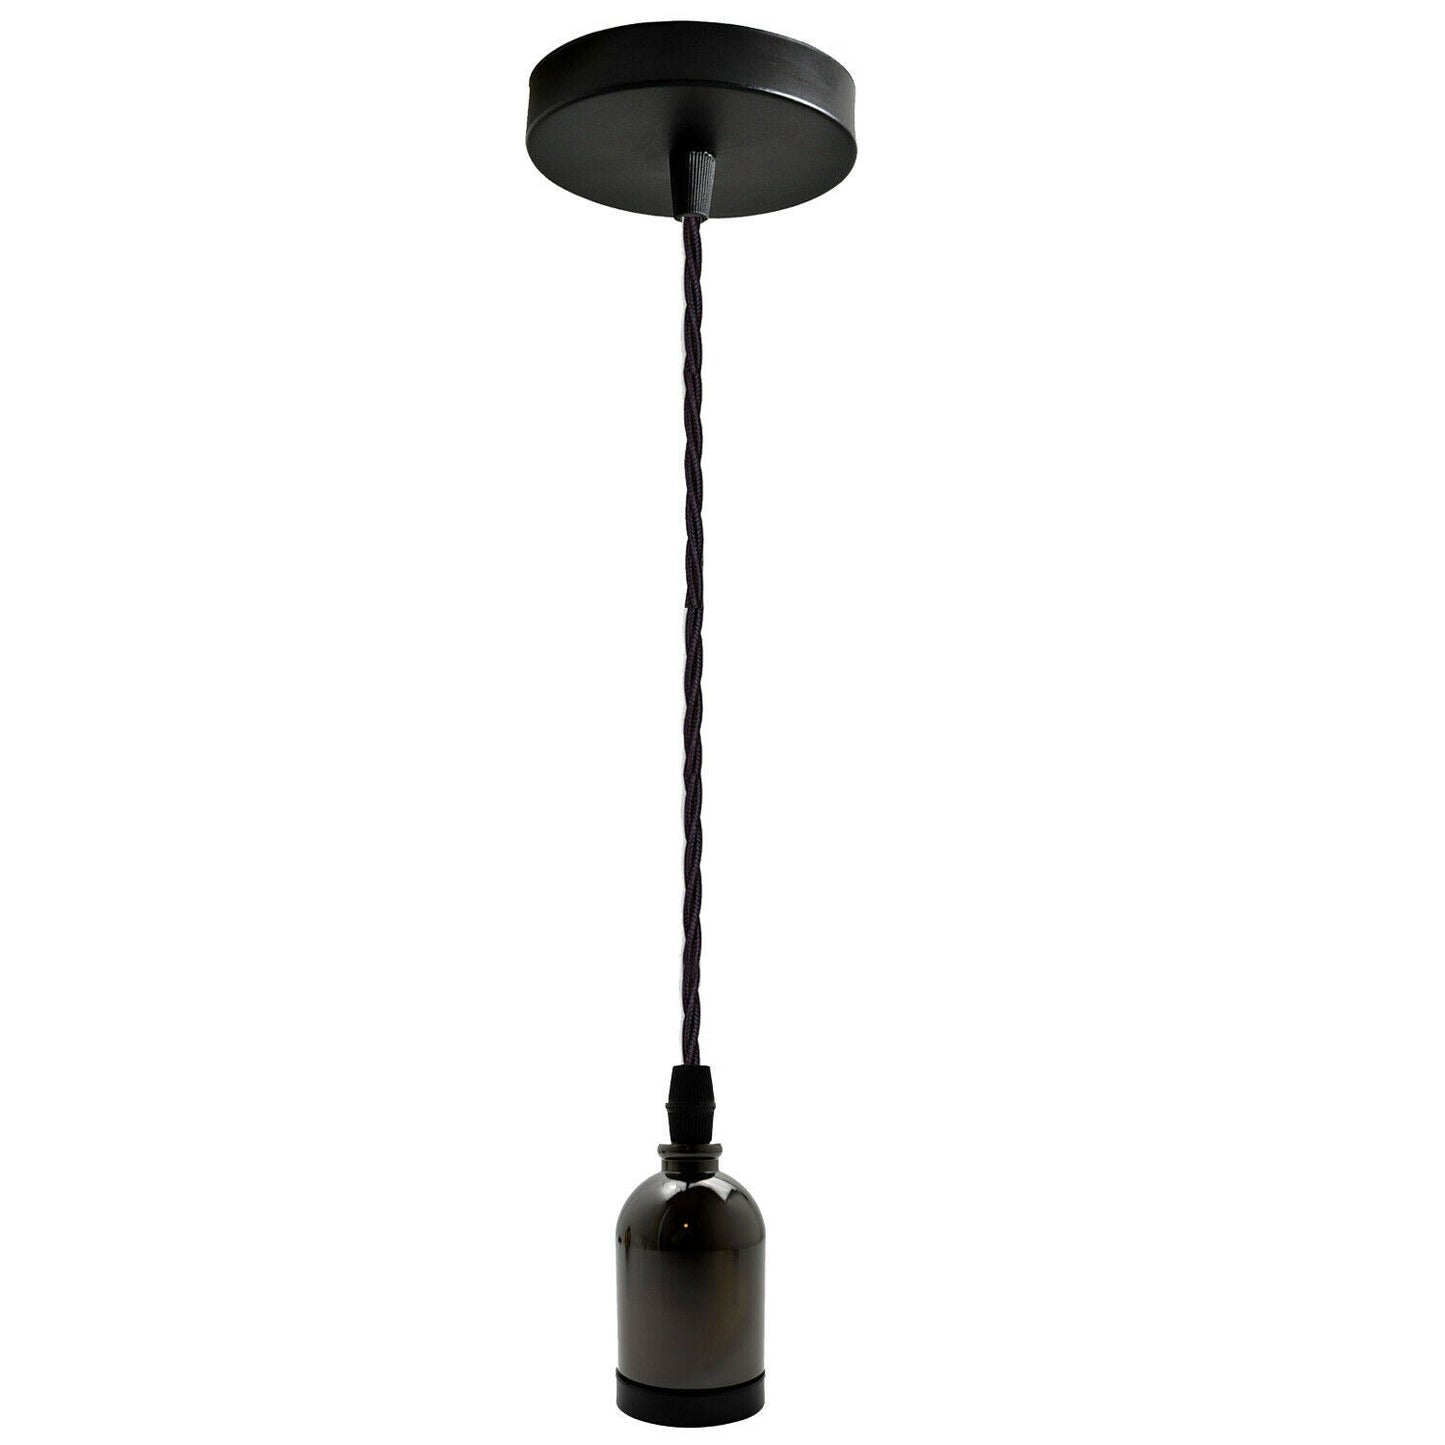 Black Multi Outlet E27 Metal Vintage Hanging Ceiling Pendant Lights~2058 - electricalsone UK Ltd